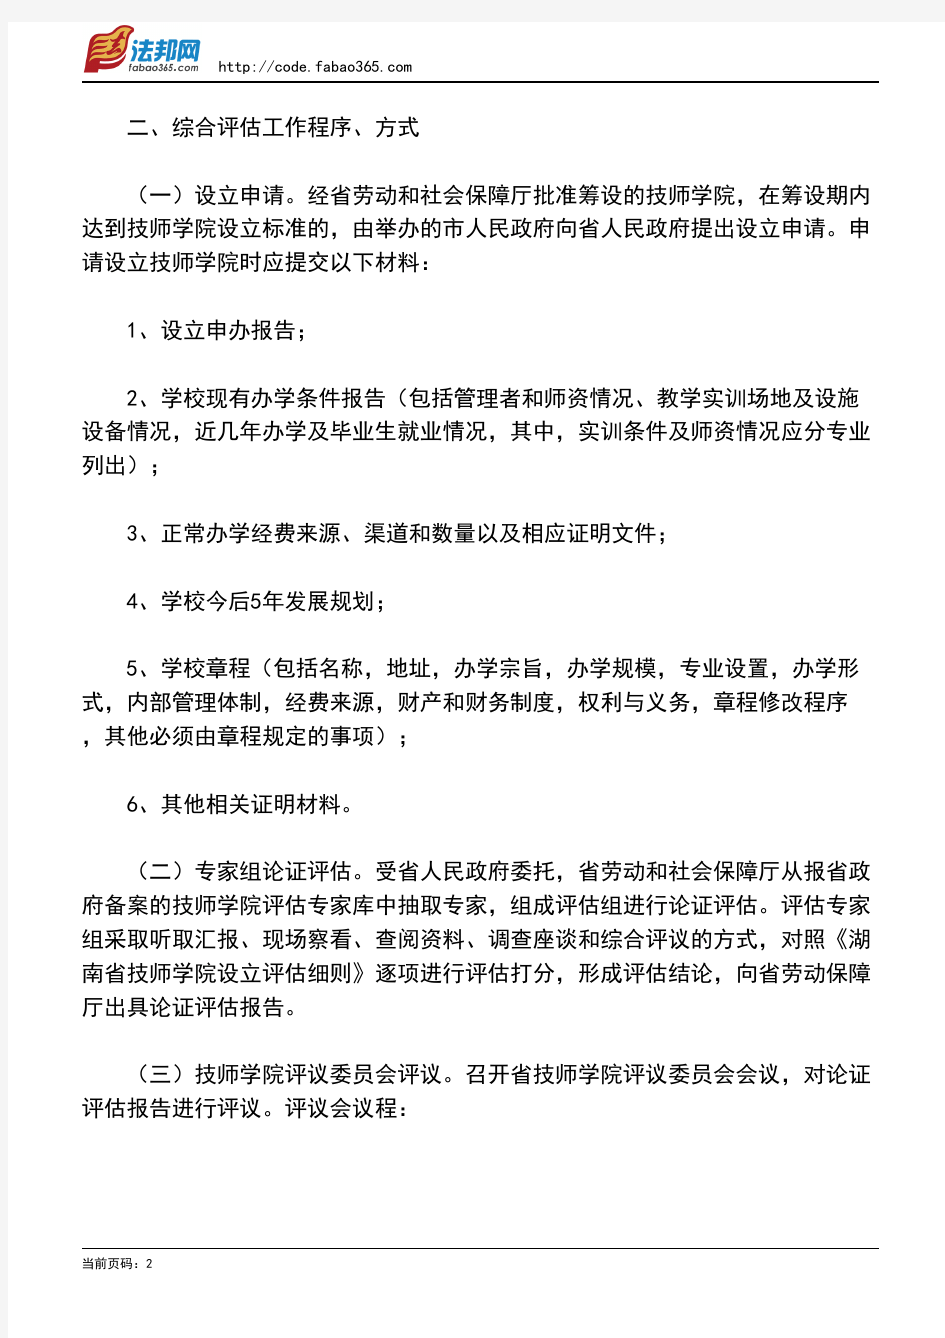 湖南省劳动和社会保障厅关于下发《湖南省技师学院设立综合评估工作方案》的通知